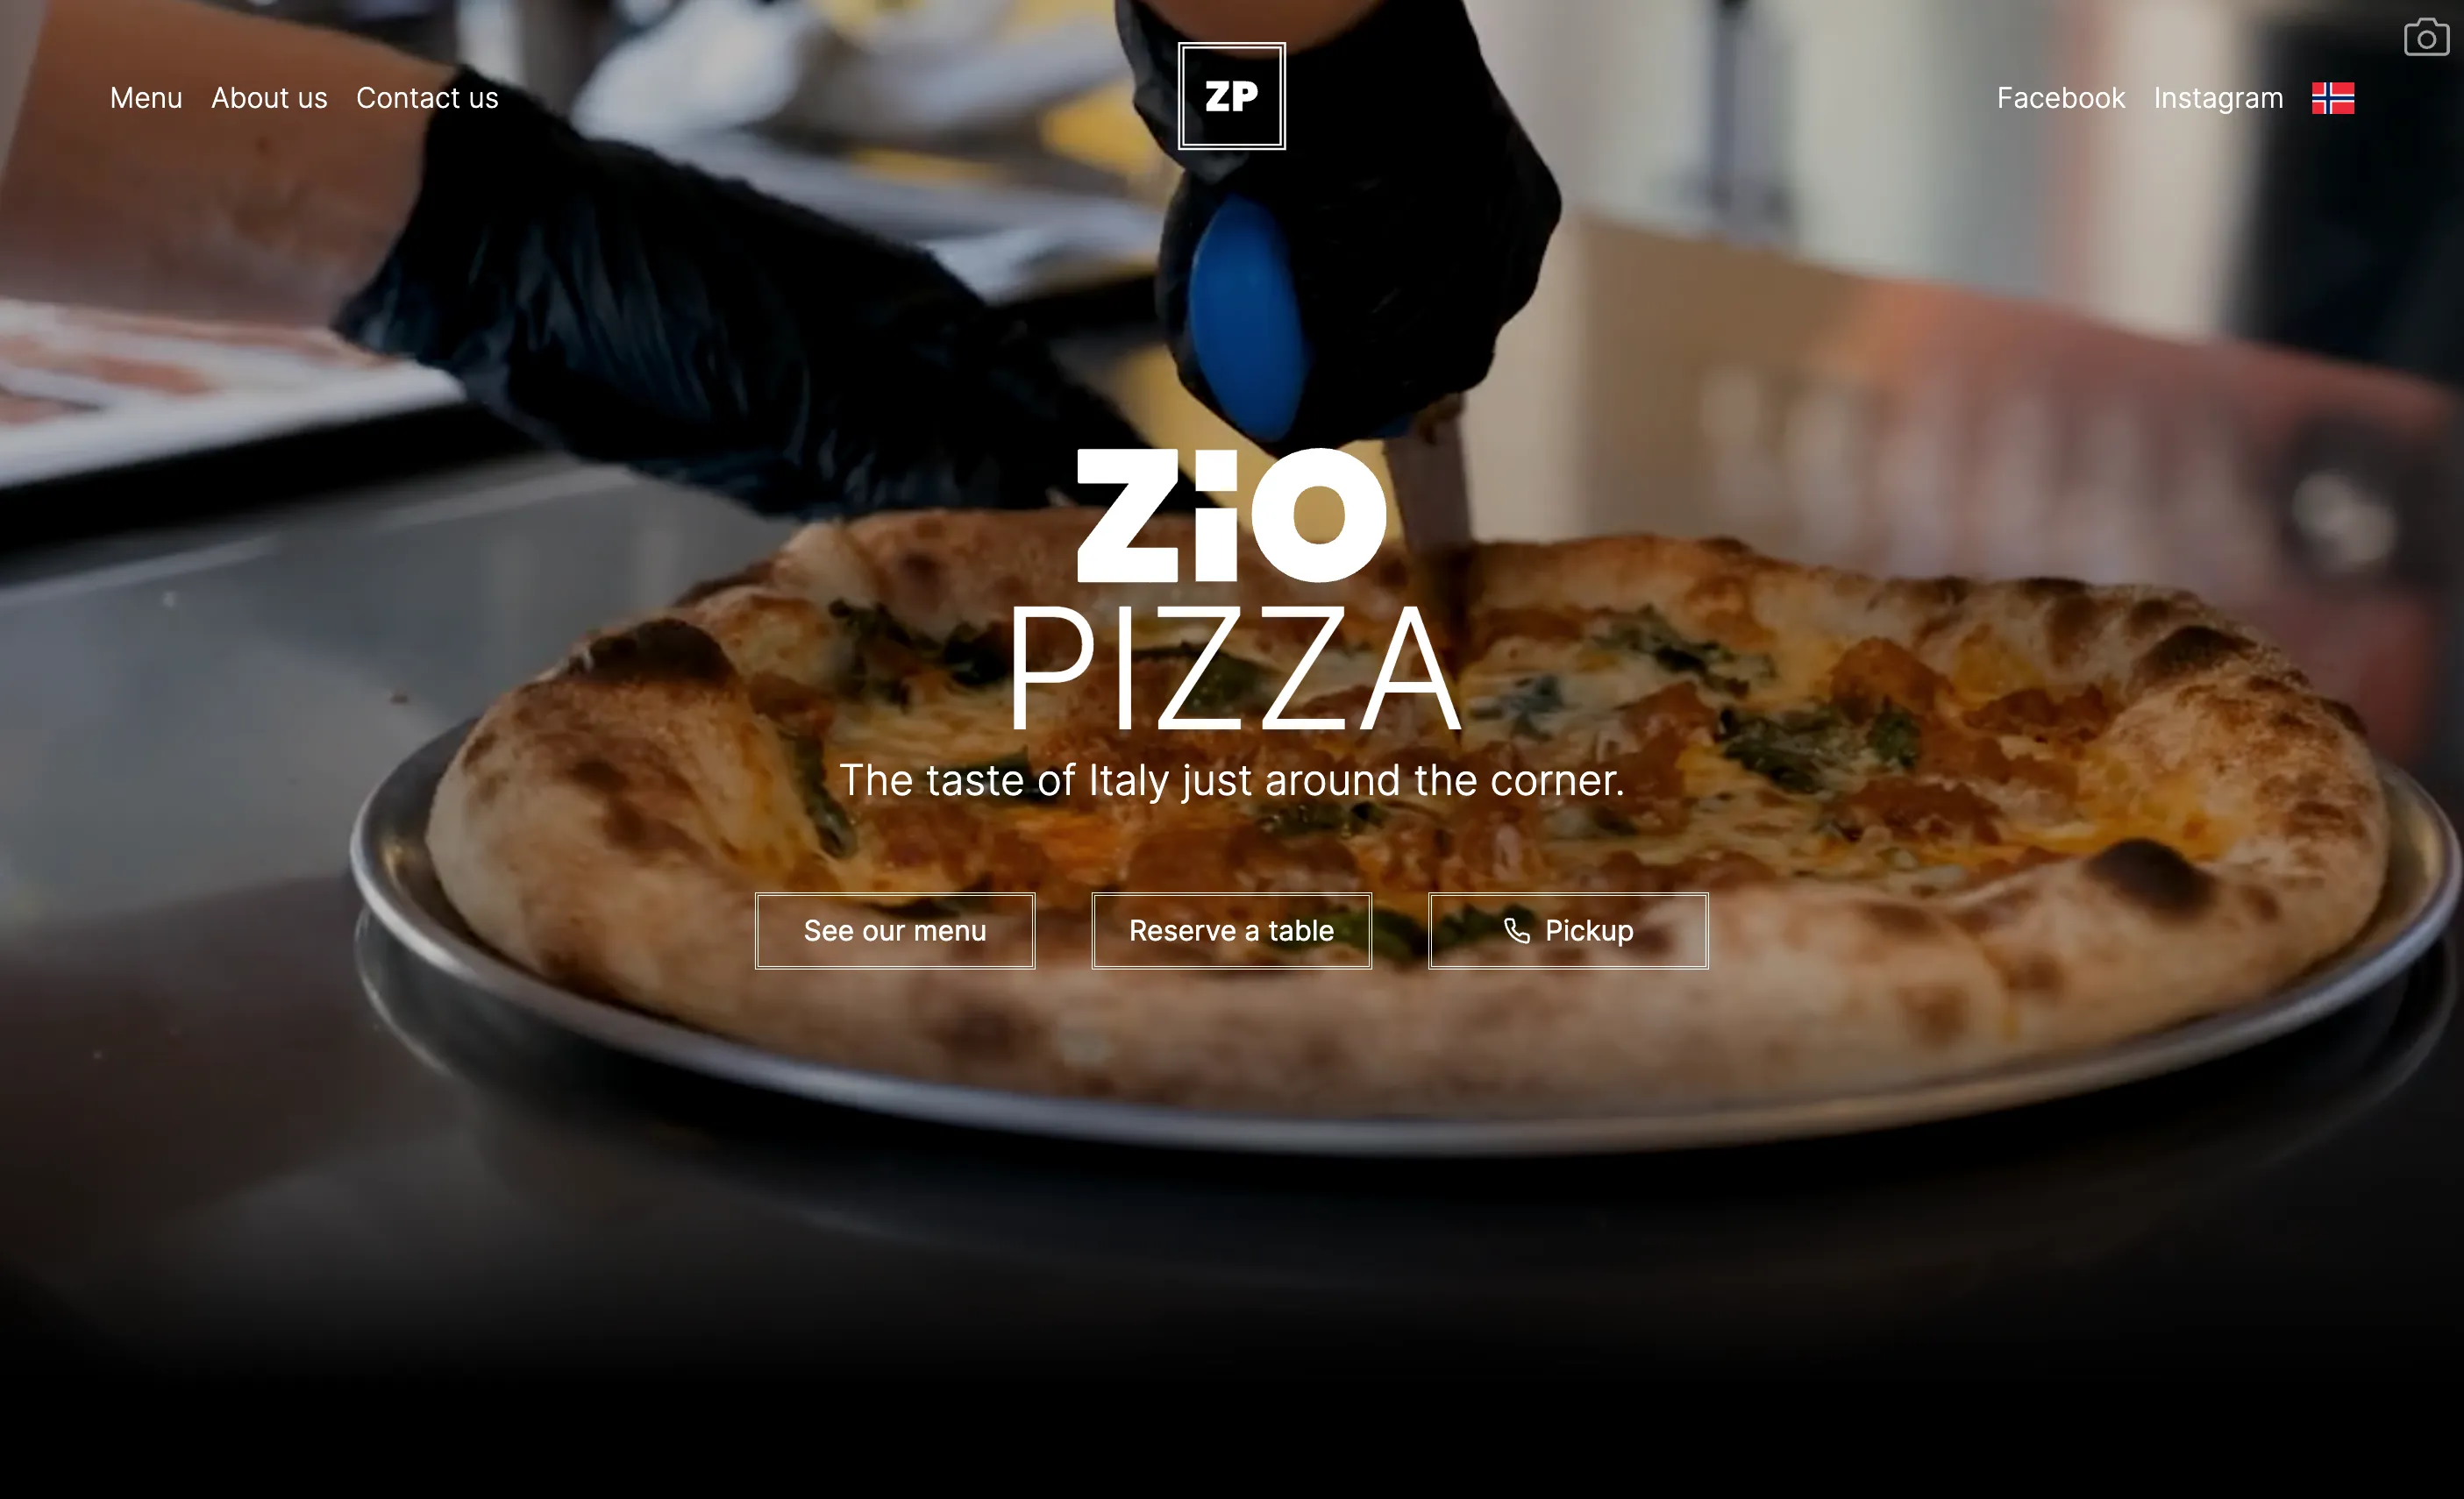 ZiO Pizza project's image